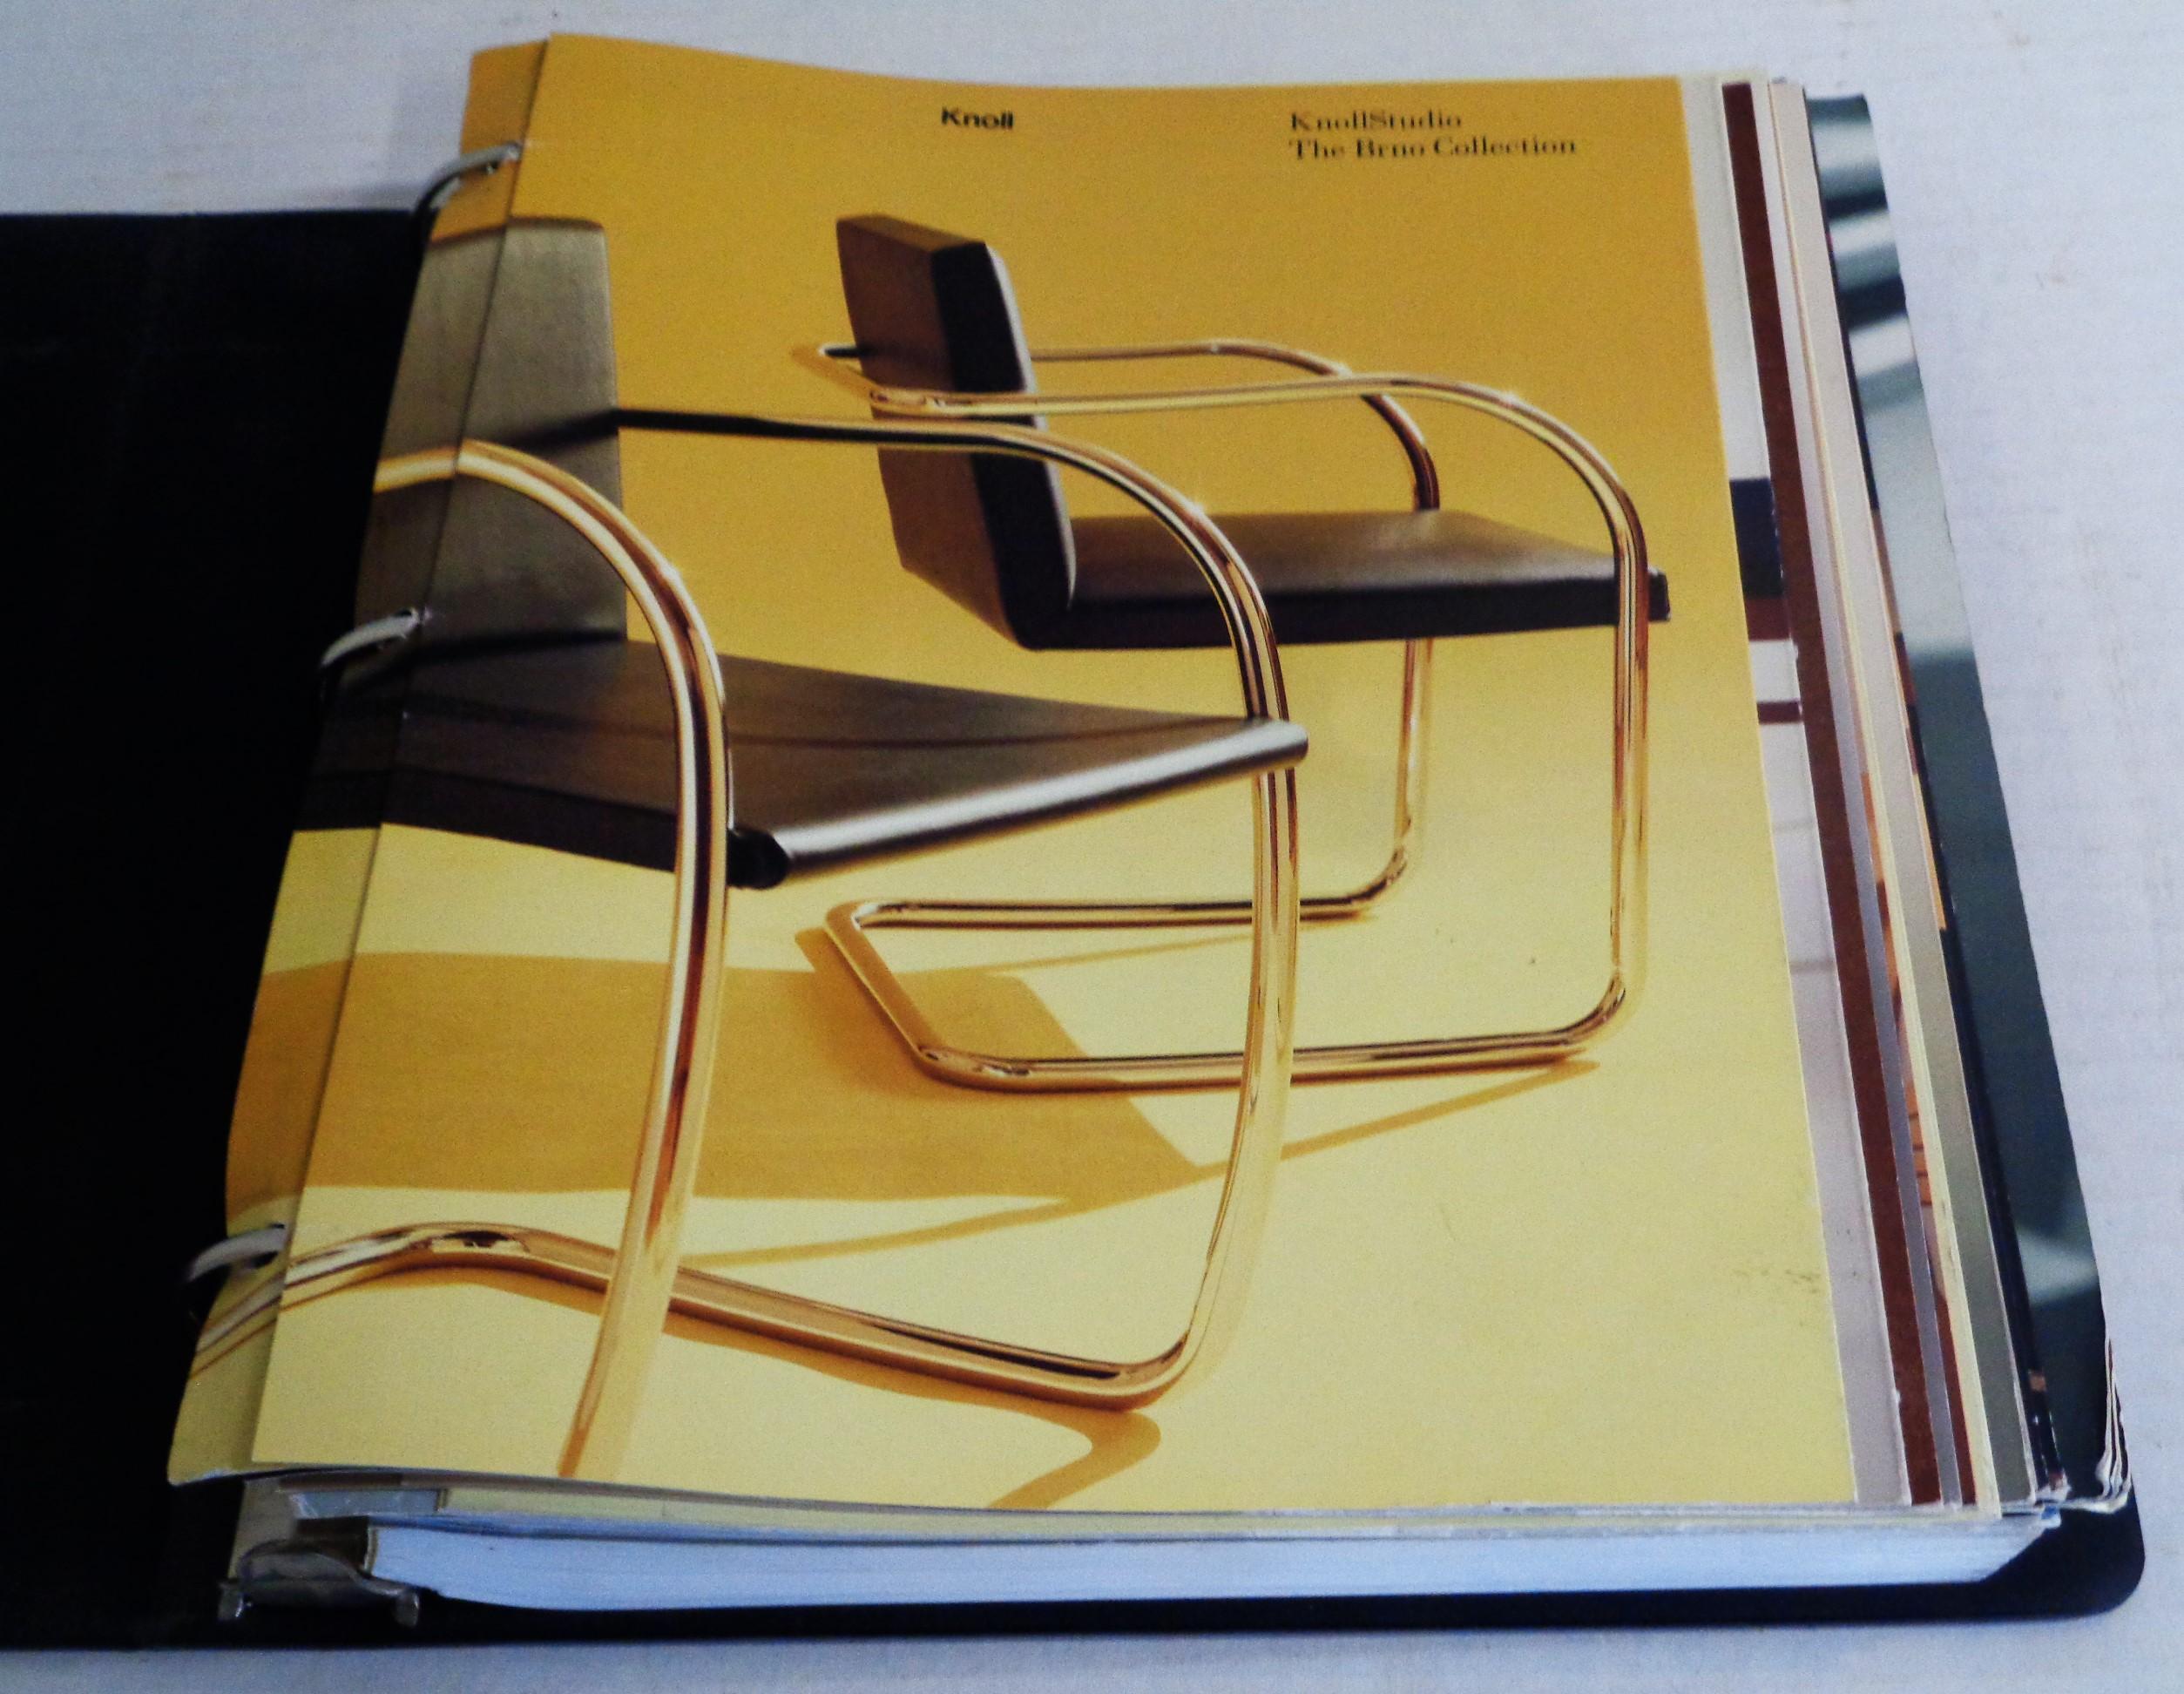 Knoll Dreiringordner mit Knoll Collection'S Katalogen und der Knoll Studio Preisliste - 306 Seiten mit Abbildungen, Diagrammen, Abmessungen, Oberflächen, Stoffen - für die Collection'S des Jahres 2000. Die Kataloge sind farbenfroh illustriert und in